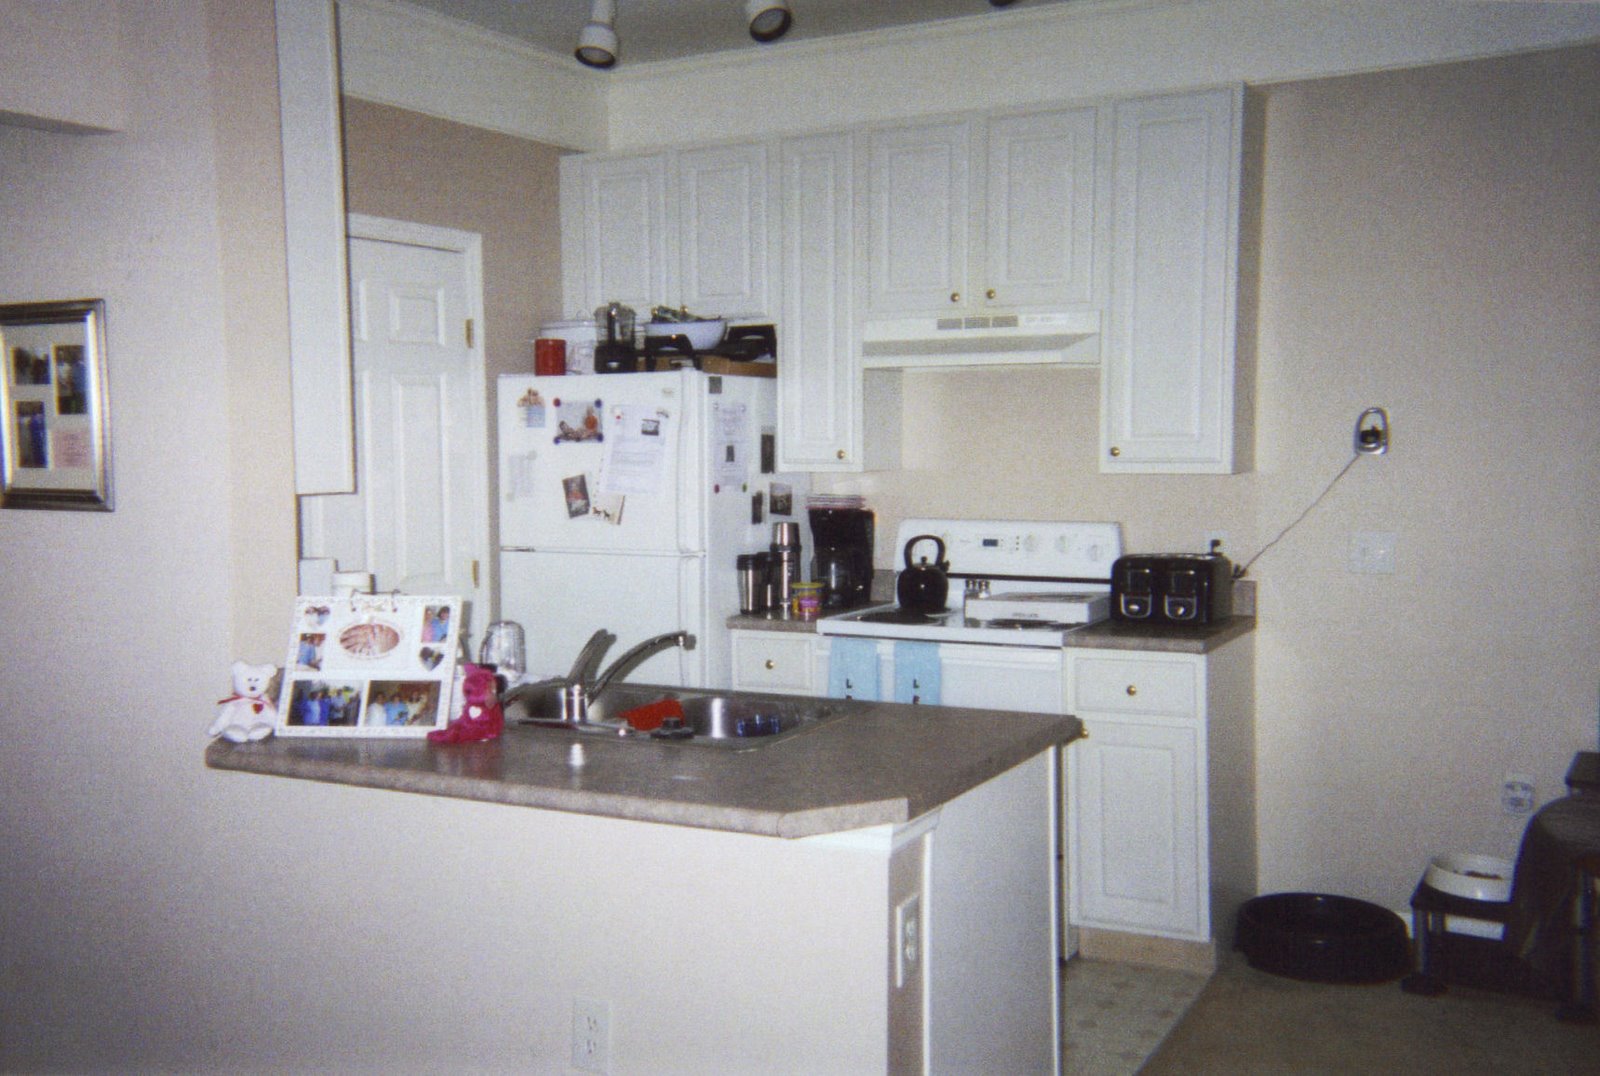 [My+kitchen.jpg]